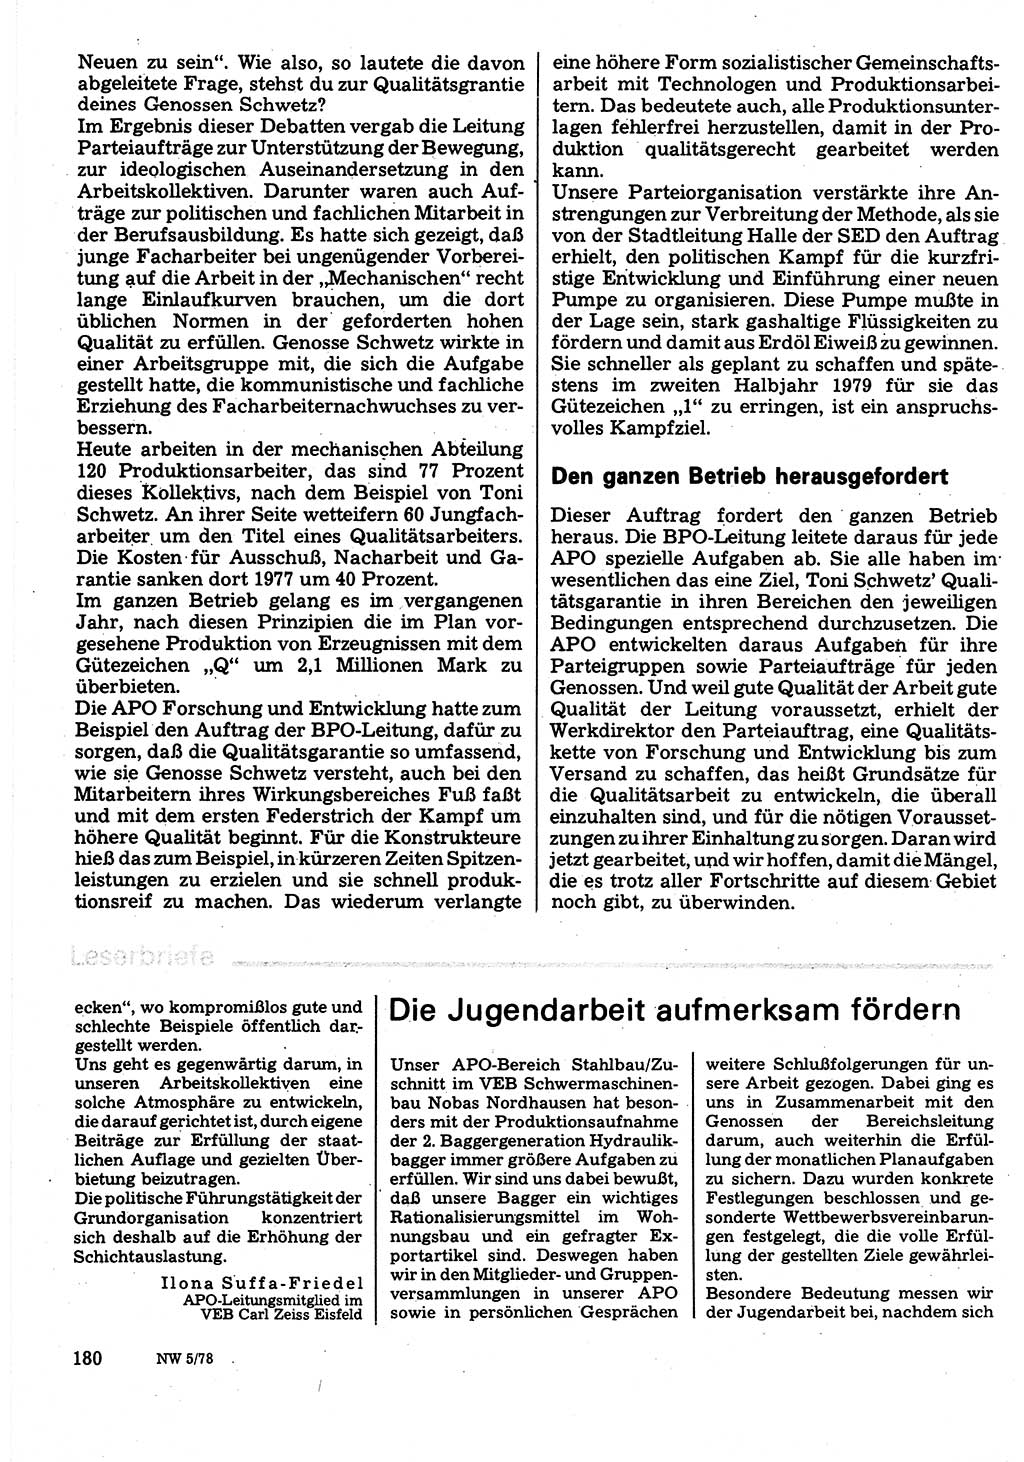 Neuer Weg (NW), Organ des Zentralkomitees (ZK) der SED (Sozialistische Einheitspartei Deutschlands) für Fragen des Parteilebens, 33. Jahrgang [Deutsche Demokratische Republik (DDR)] 1978, Seite 180 (NW ZK SED DDR 1978, S. 180)